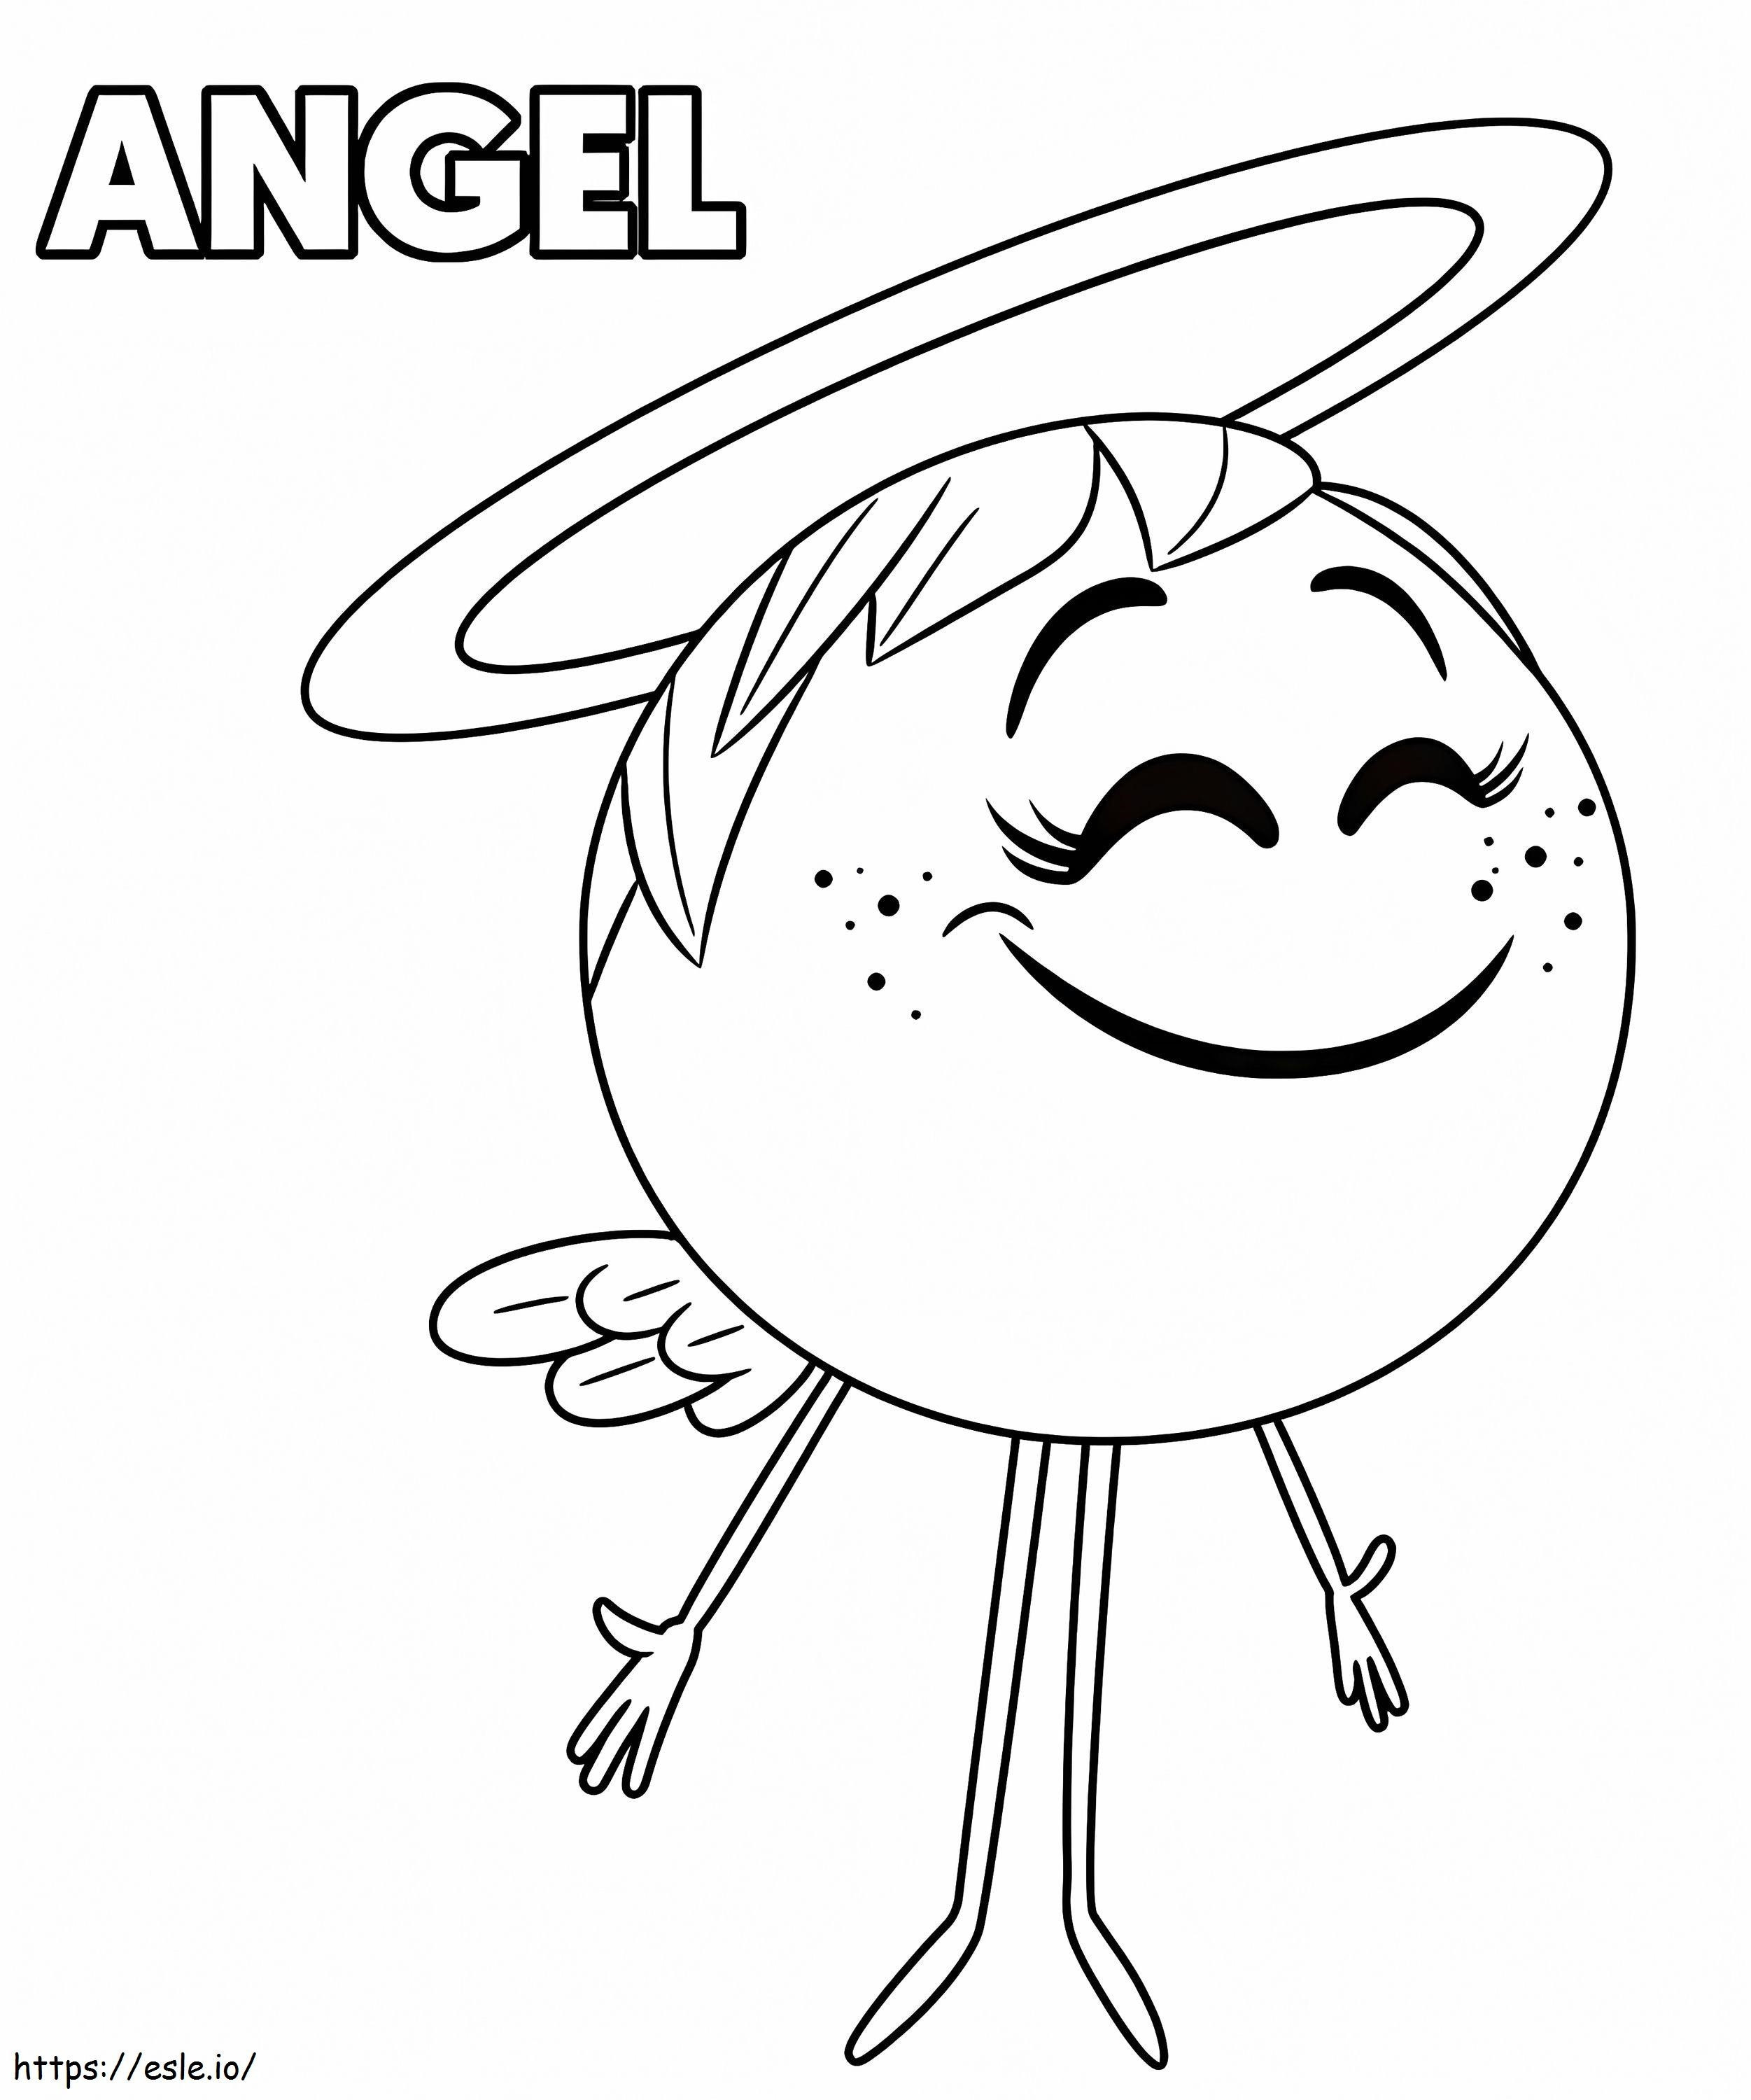 Engel aus dem Emoji-Film ausmalbilder